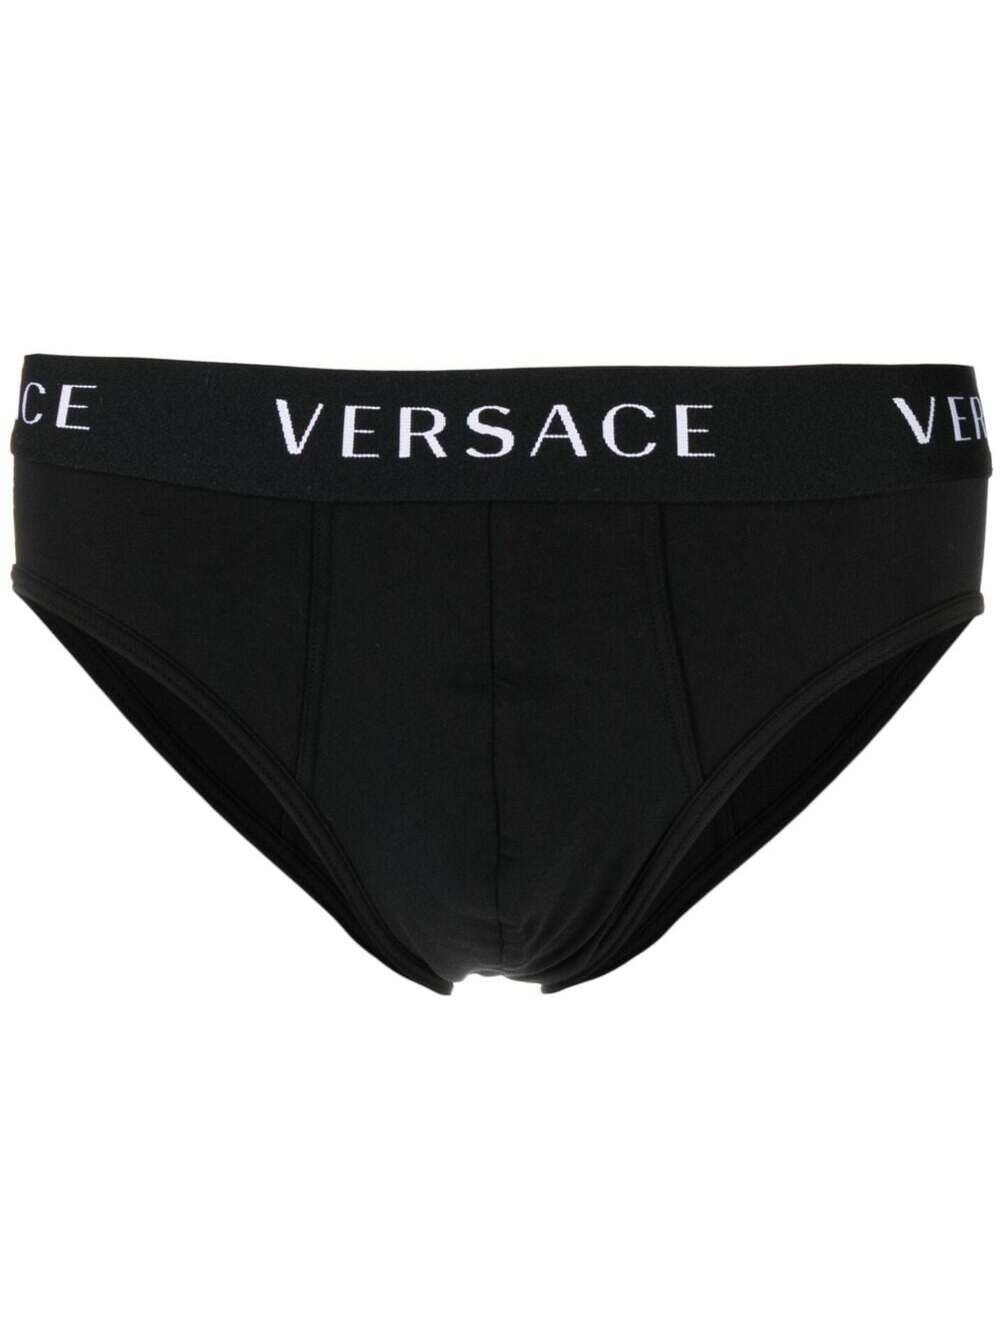 Versace Underwear Brief